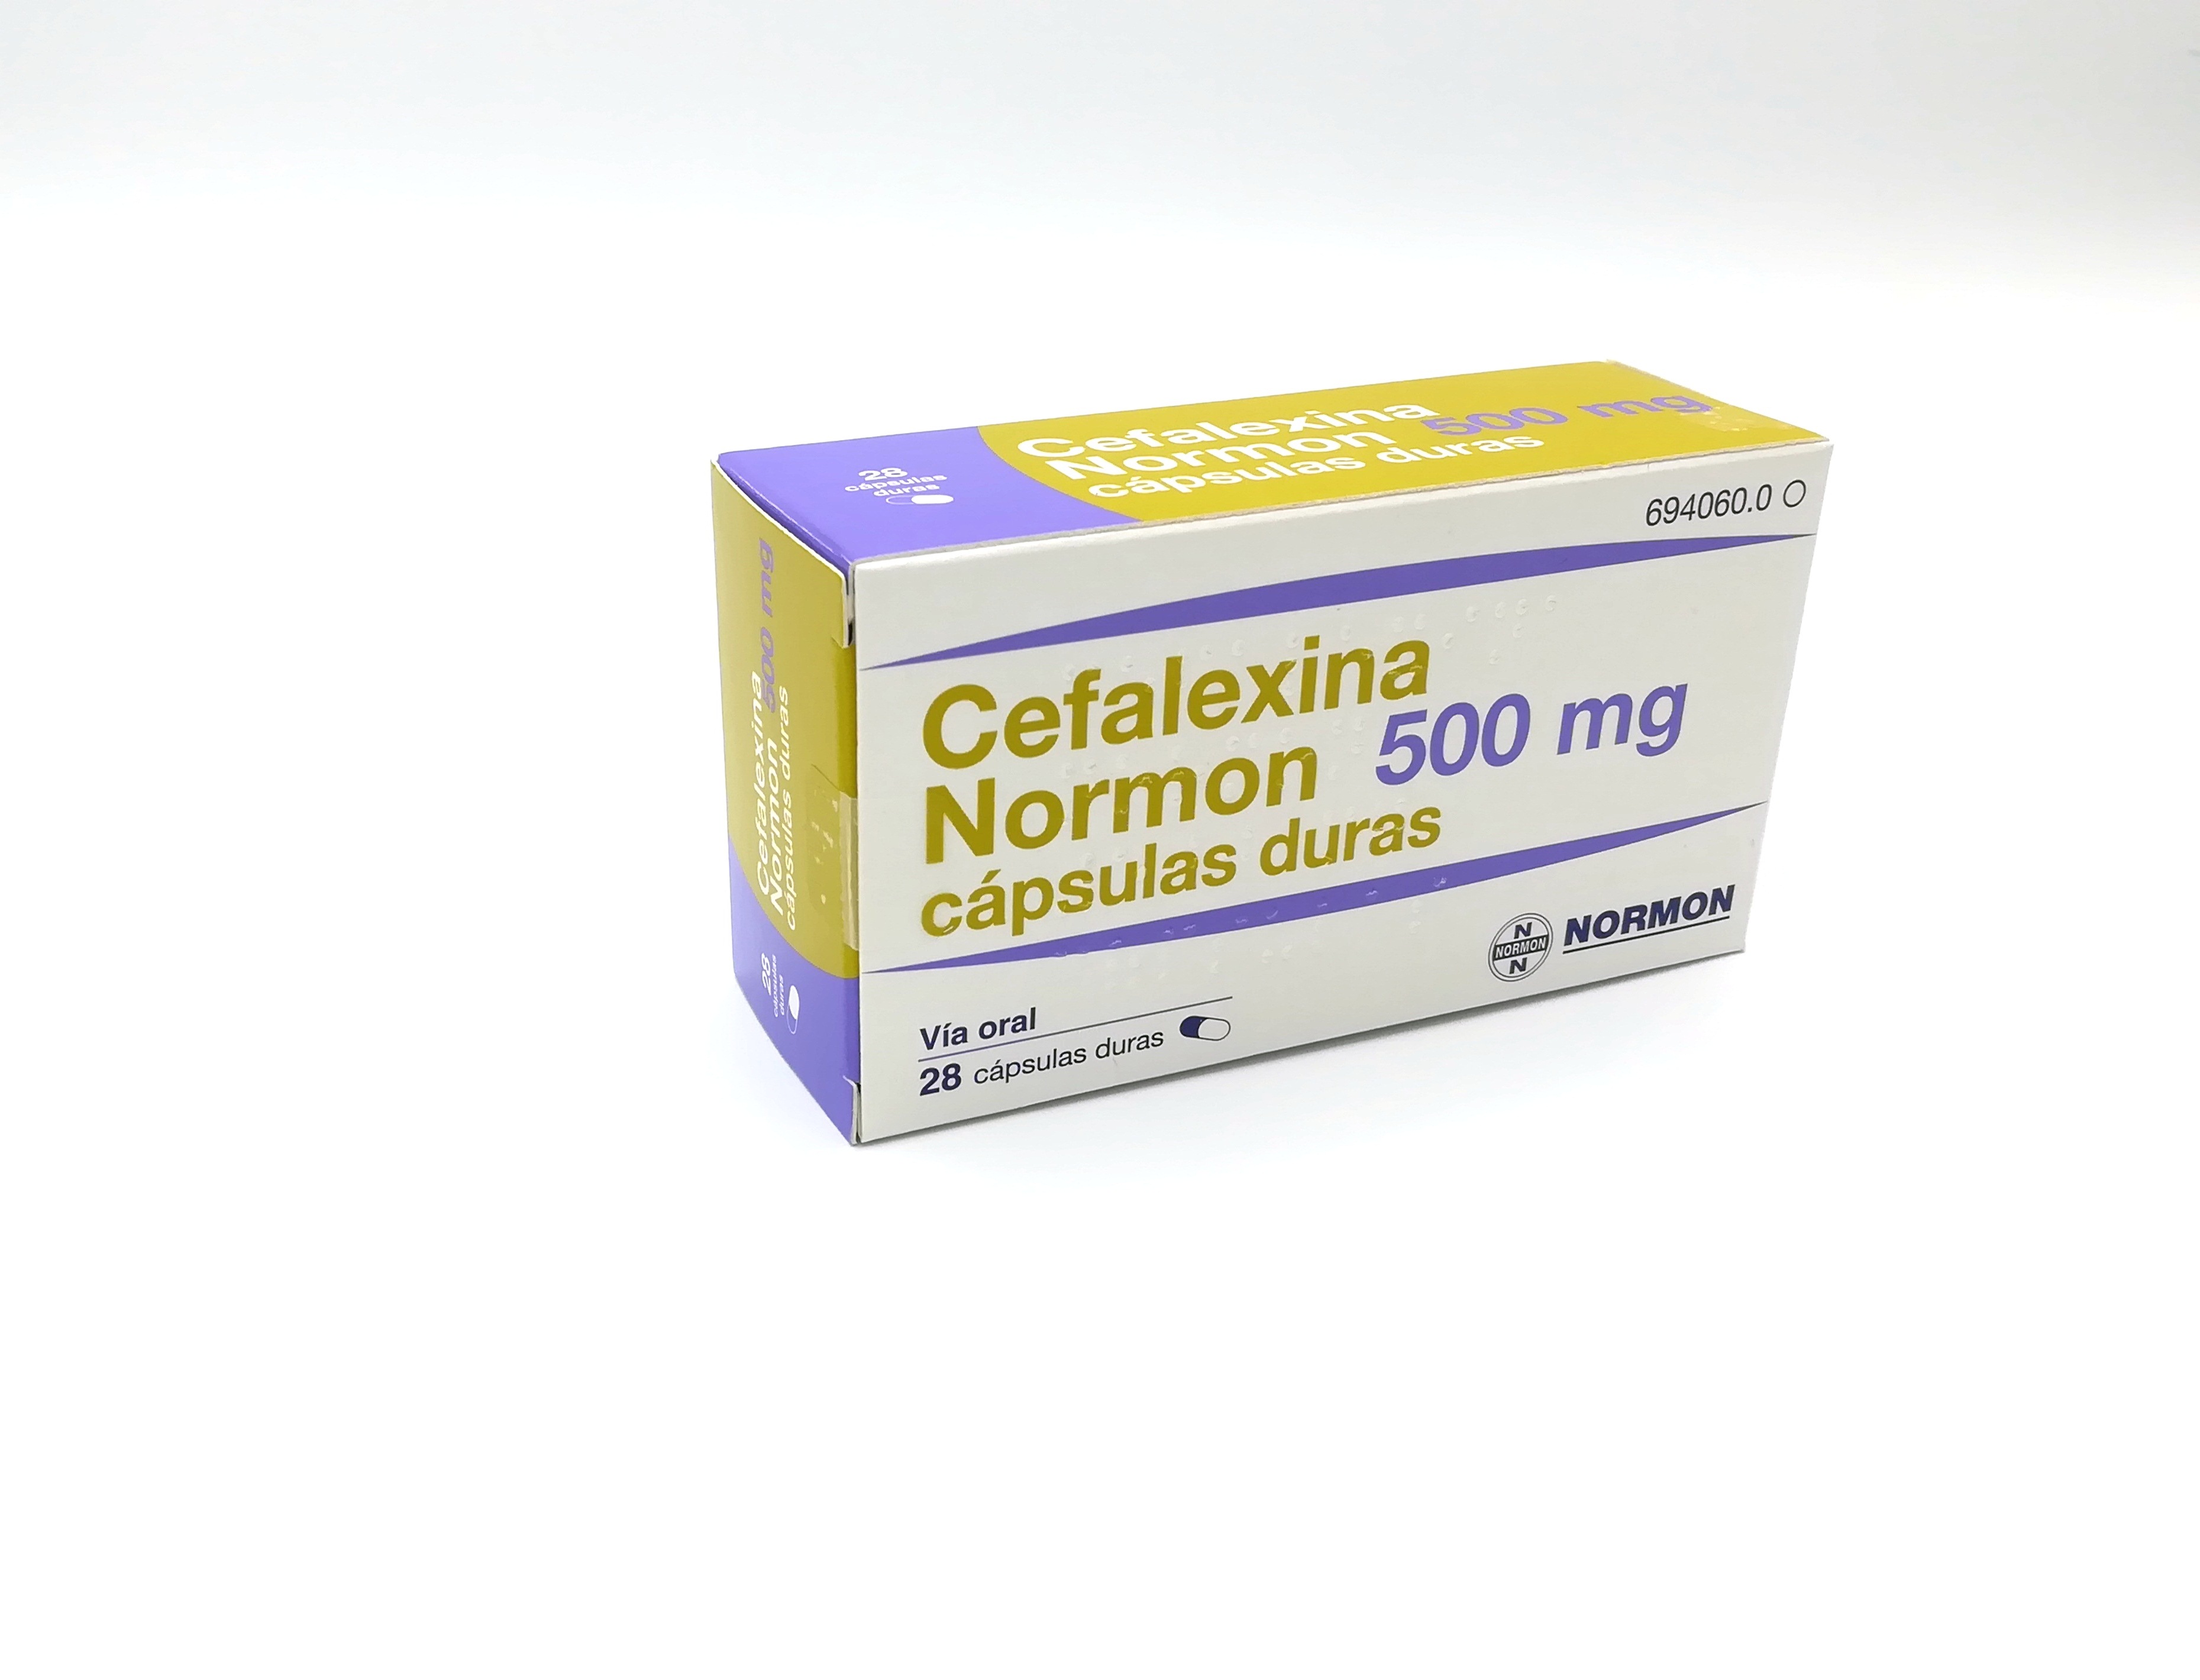 CEFALEXINA NORMON 500 mg 500 CAPSULAS